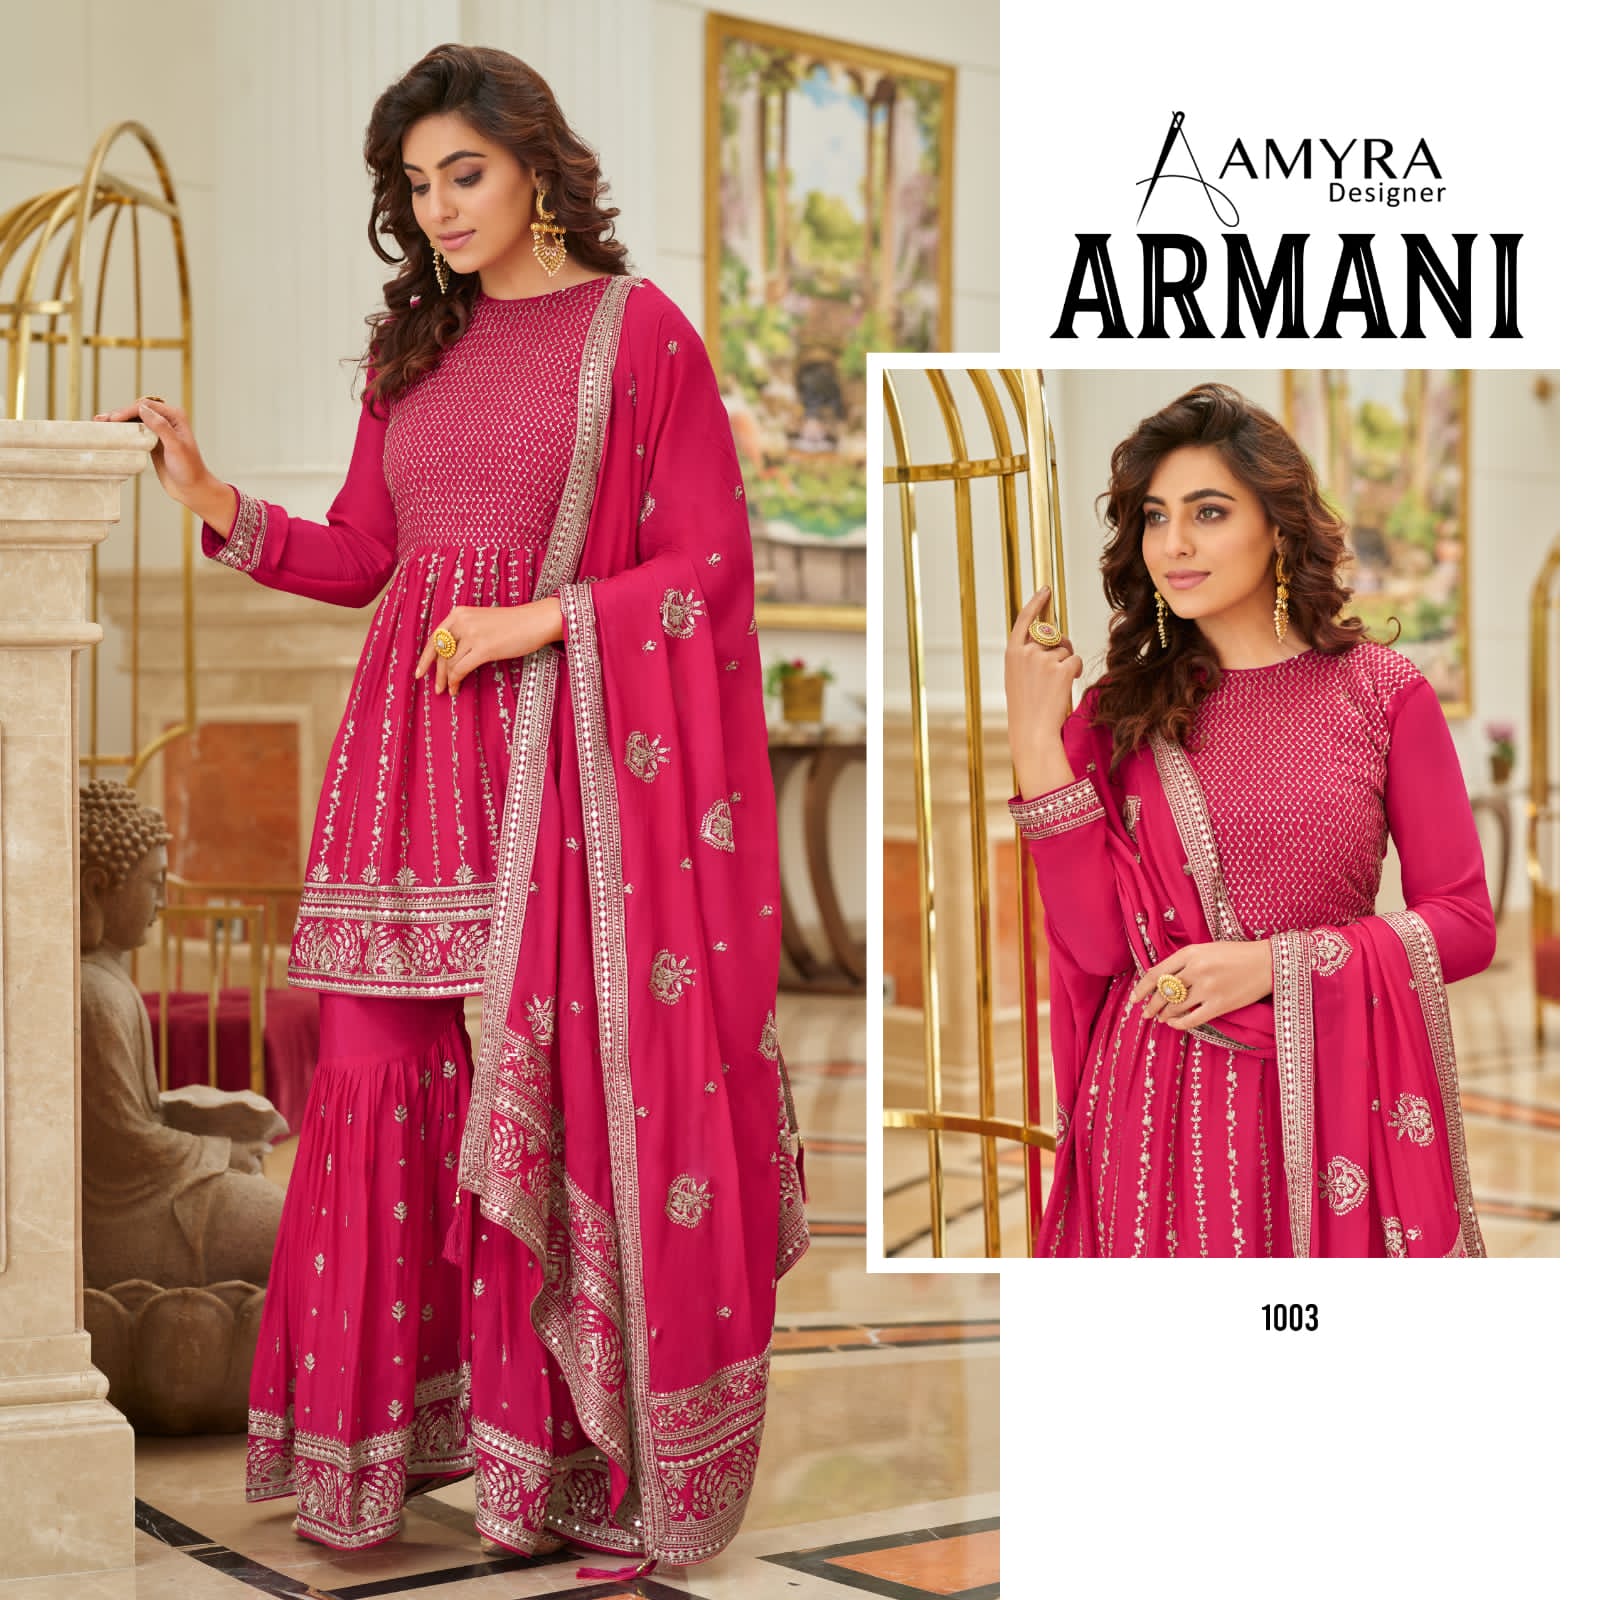 Amyra Armani collection 4